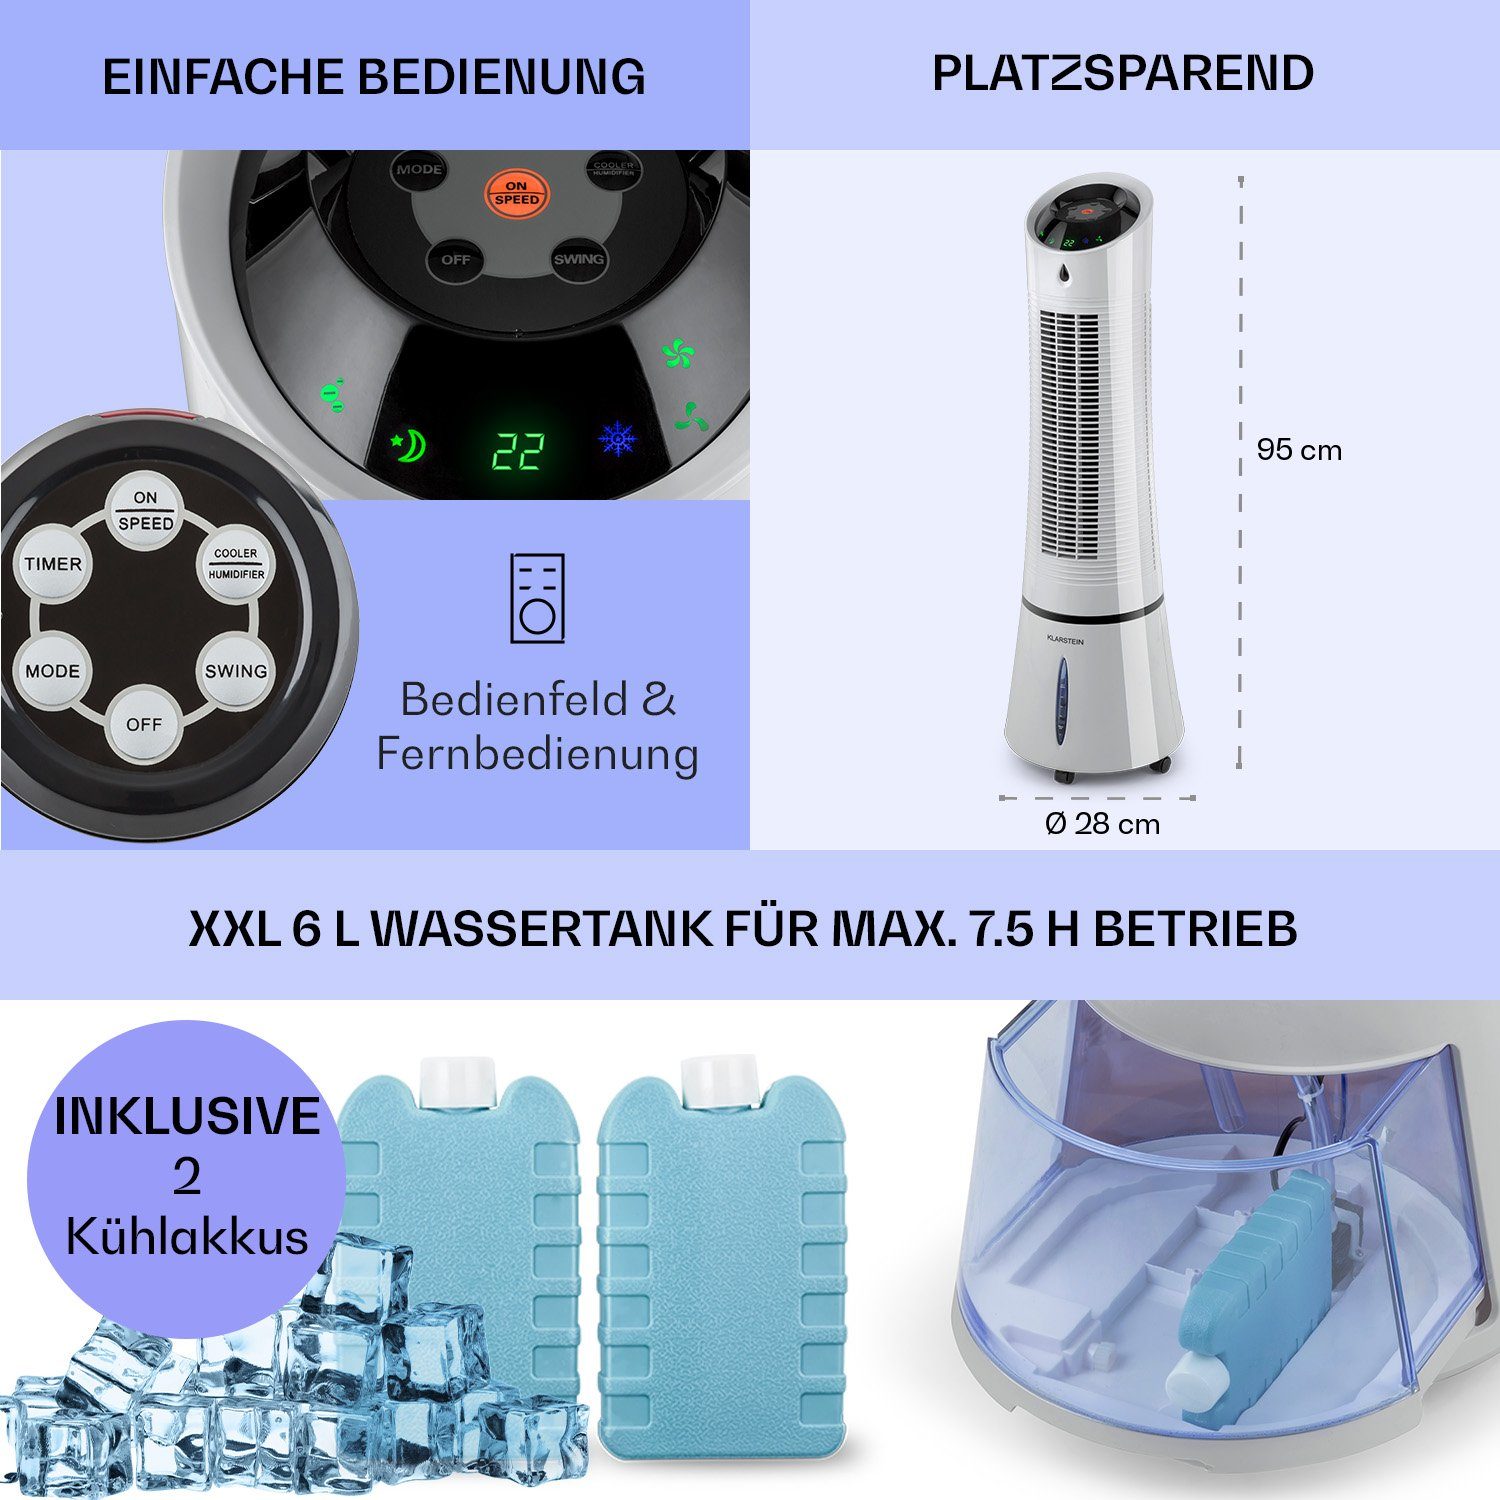 Luftkühler, Eis Ice mit Abluftschlauch Grau 4-in-1 mobil Klarstein Skyscraper Klimagerät Wasserkühlung & ohne Ventilatorkombigerät